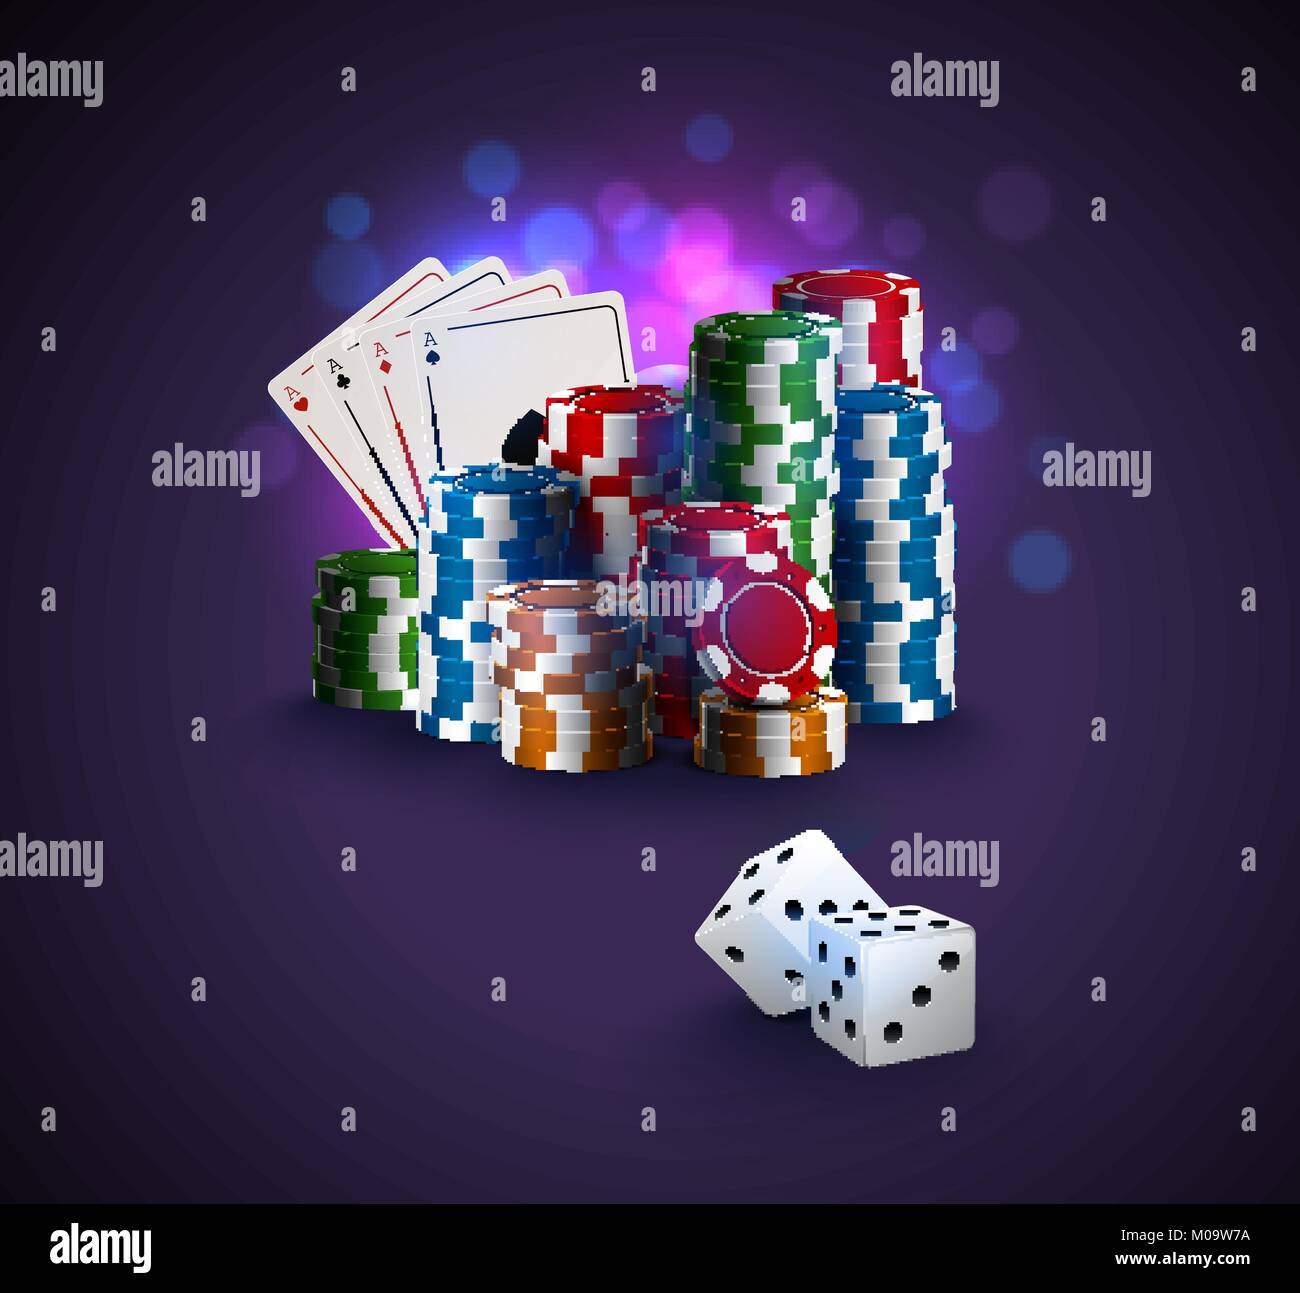 Poker Vector Illustration, Stapel von Poker chips, ace-Karten auf Bokeh lila Hintergrund, zwei weisse Würfel im Vordergrund. Gambling Online Casino Winner po Stock Vektor